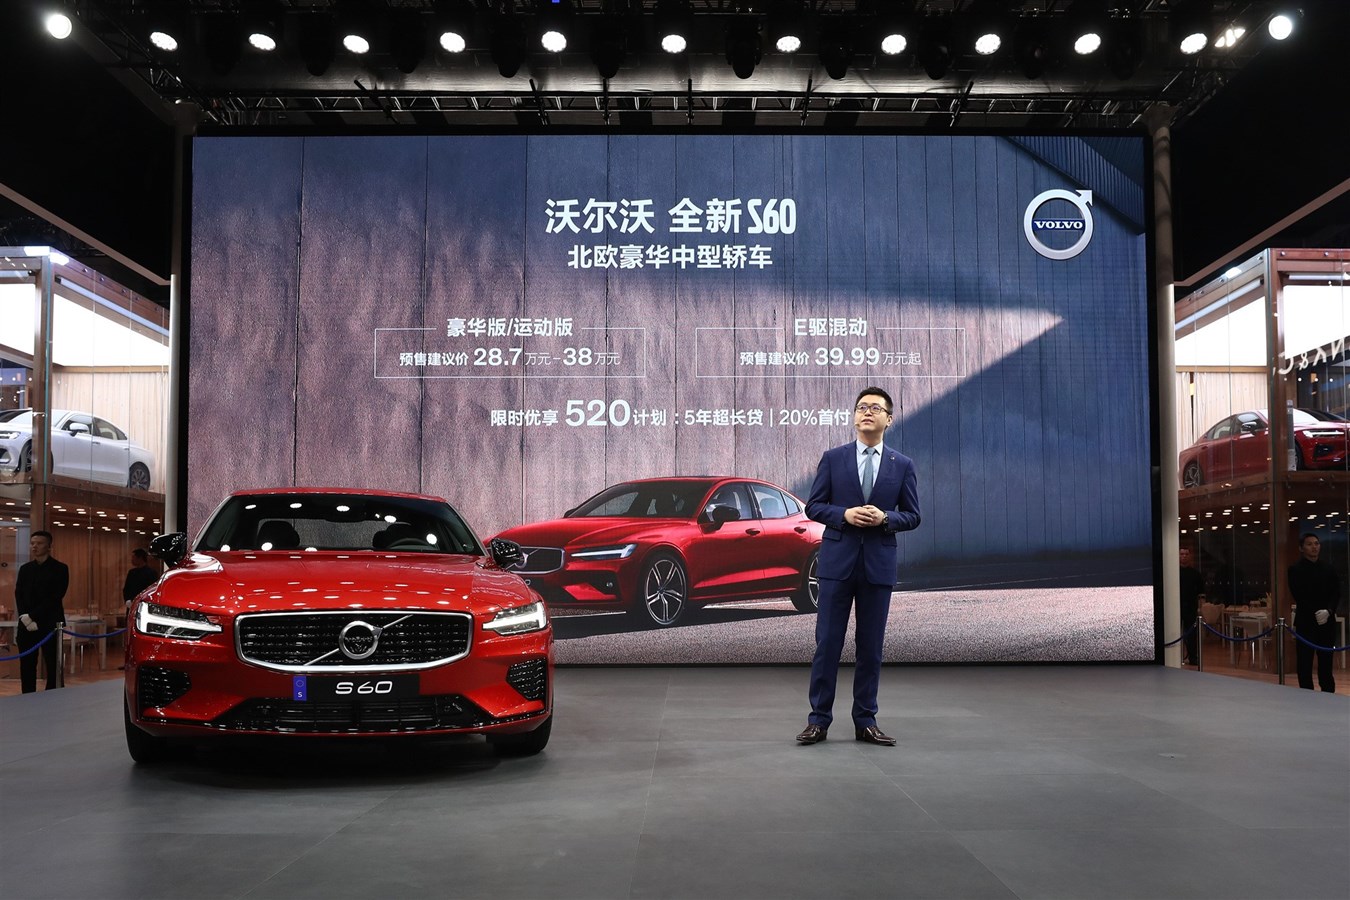 沃尔沃汽车大中华区销售公司总裁钦培吉先生公布全新S60预售价格及限时优享520计划